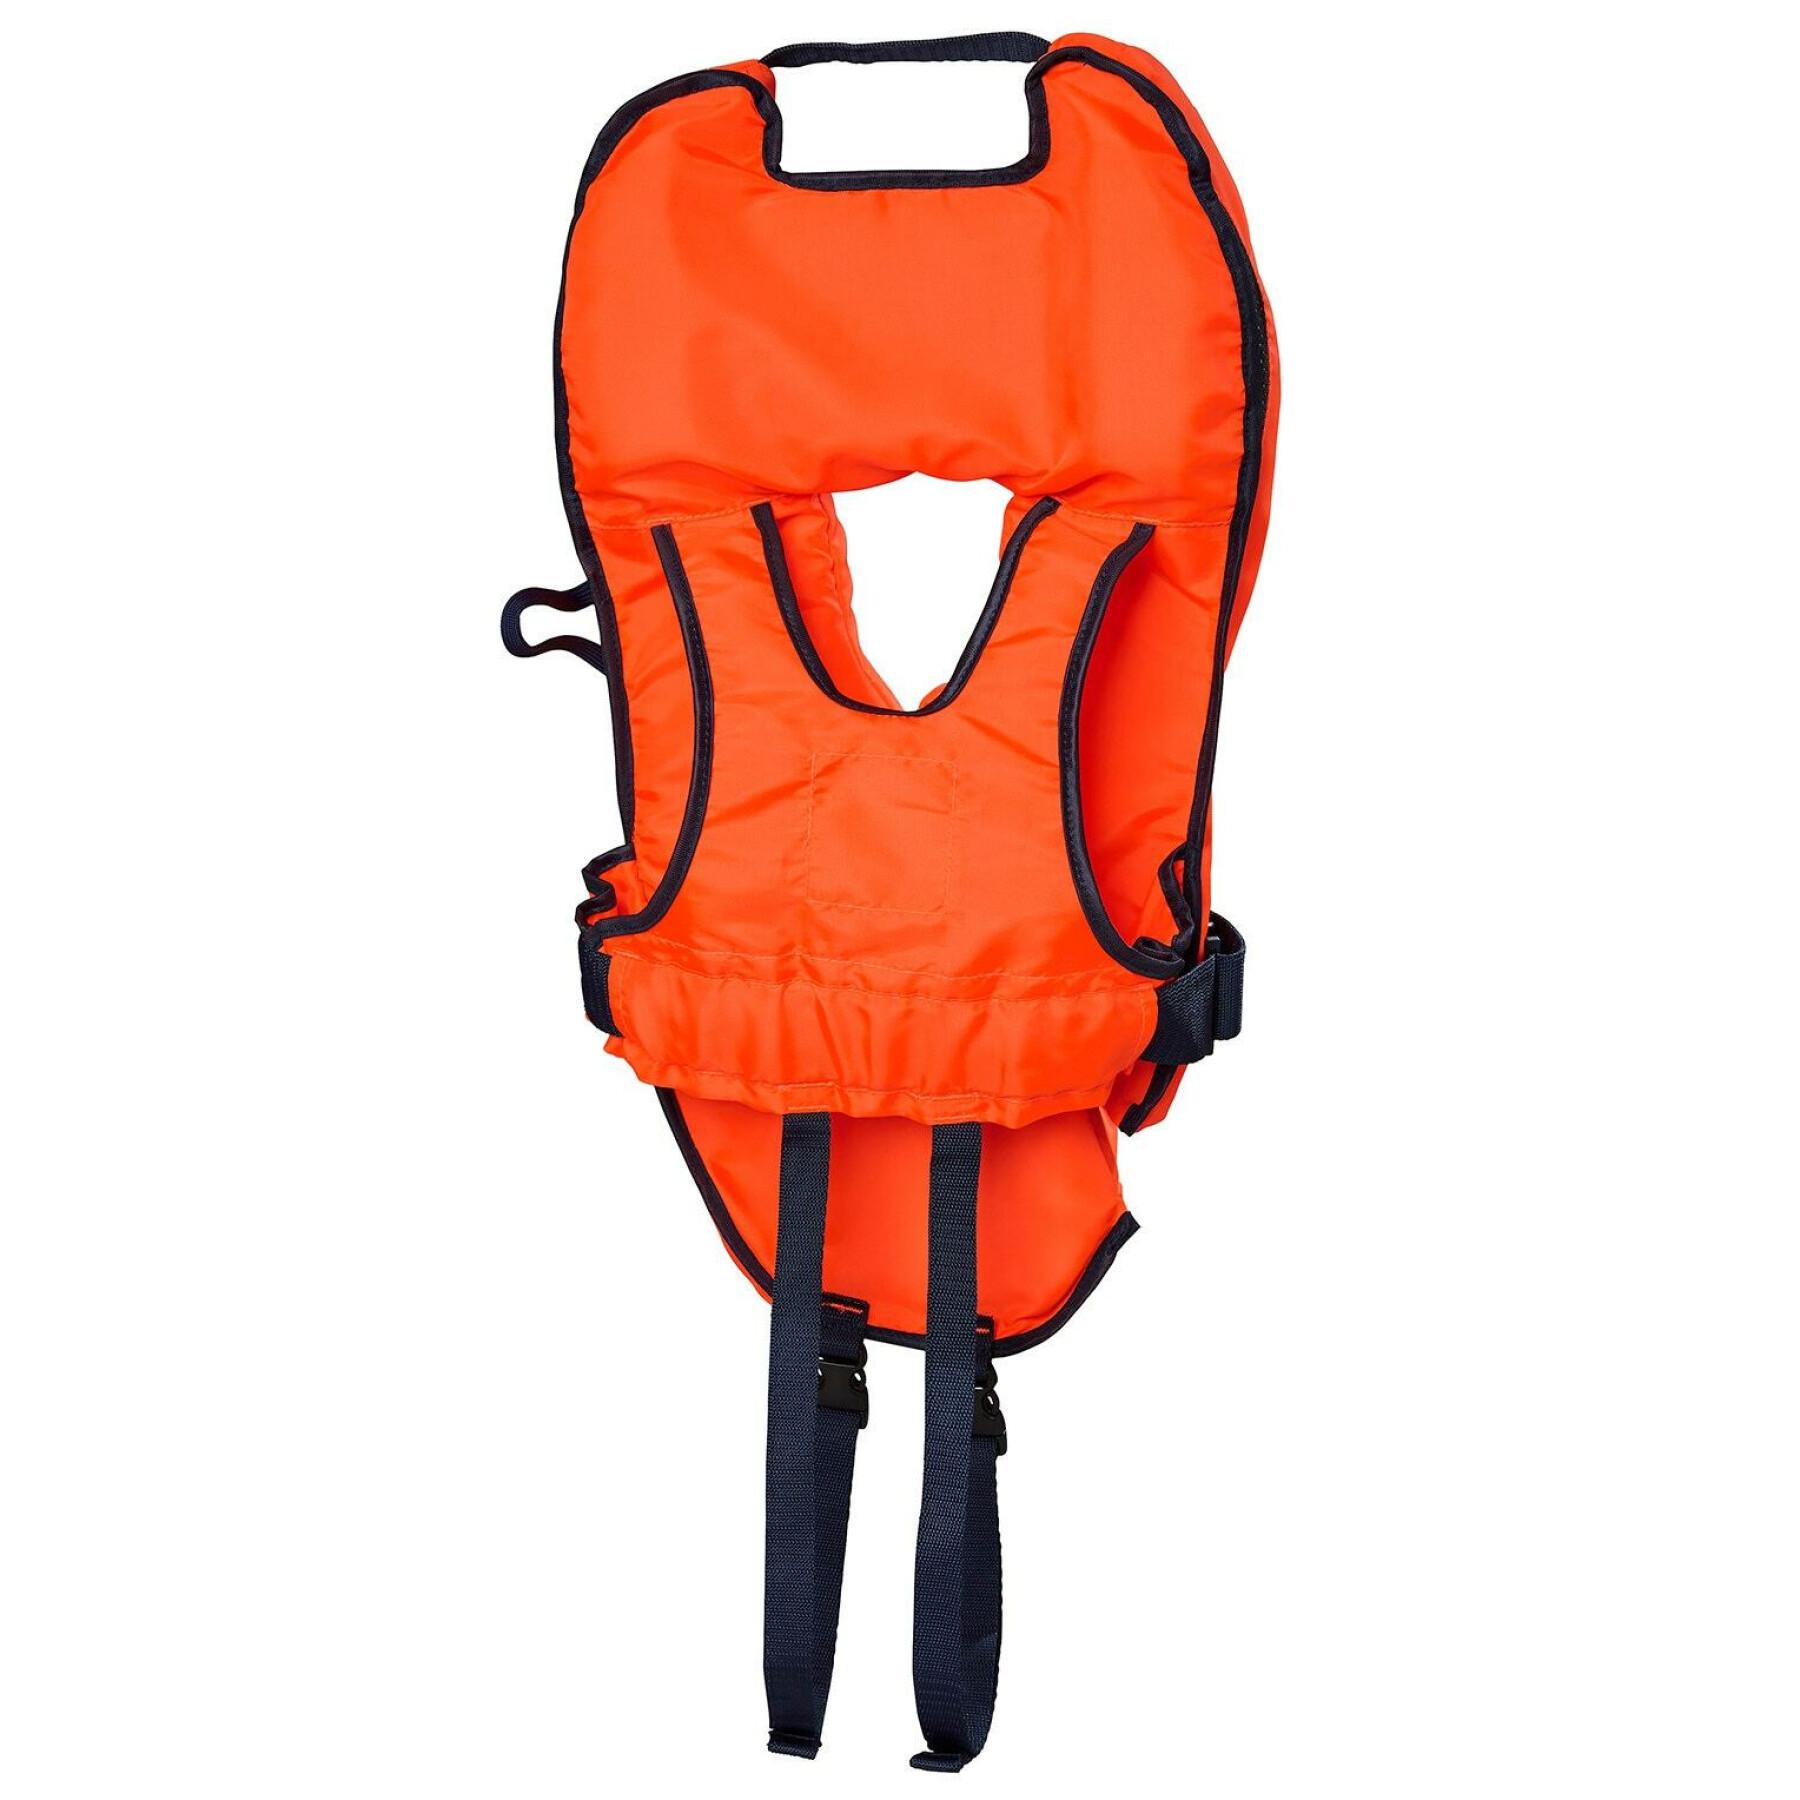 Children's lifejacket Helly Hansen Safe+